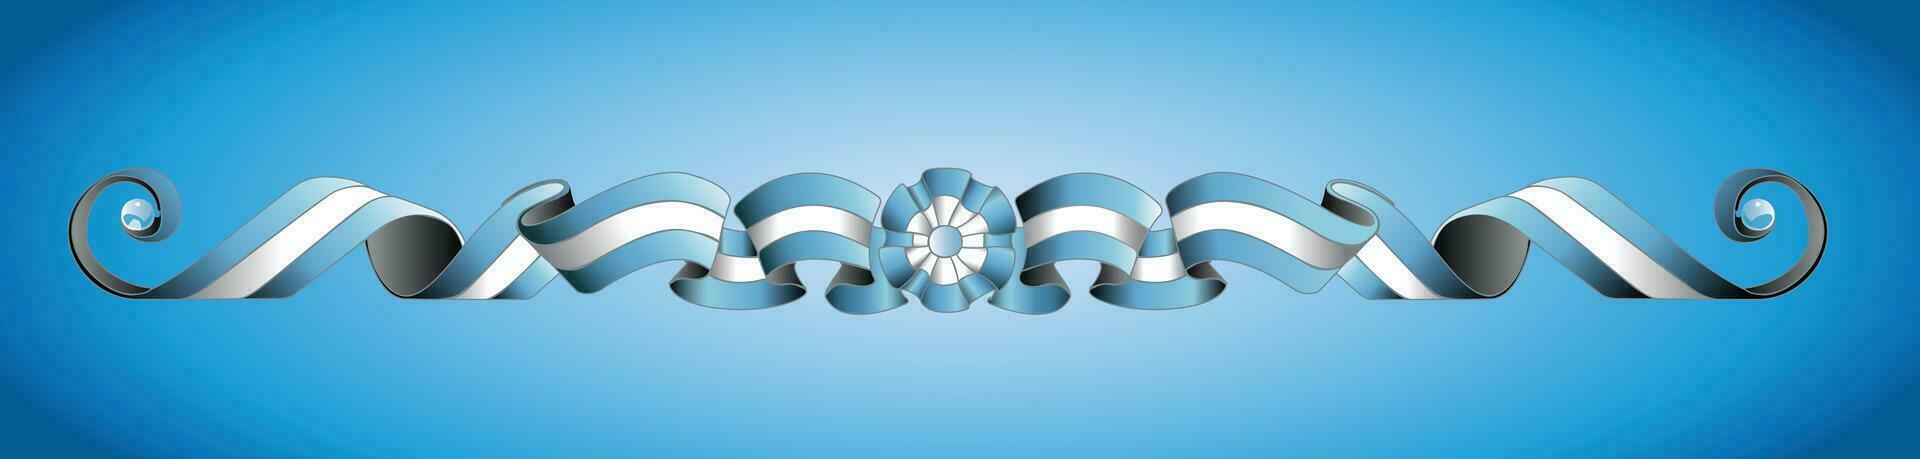 argentino bandiera fileteado porteno argentino design tela pittura vettore